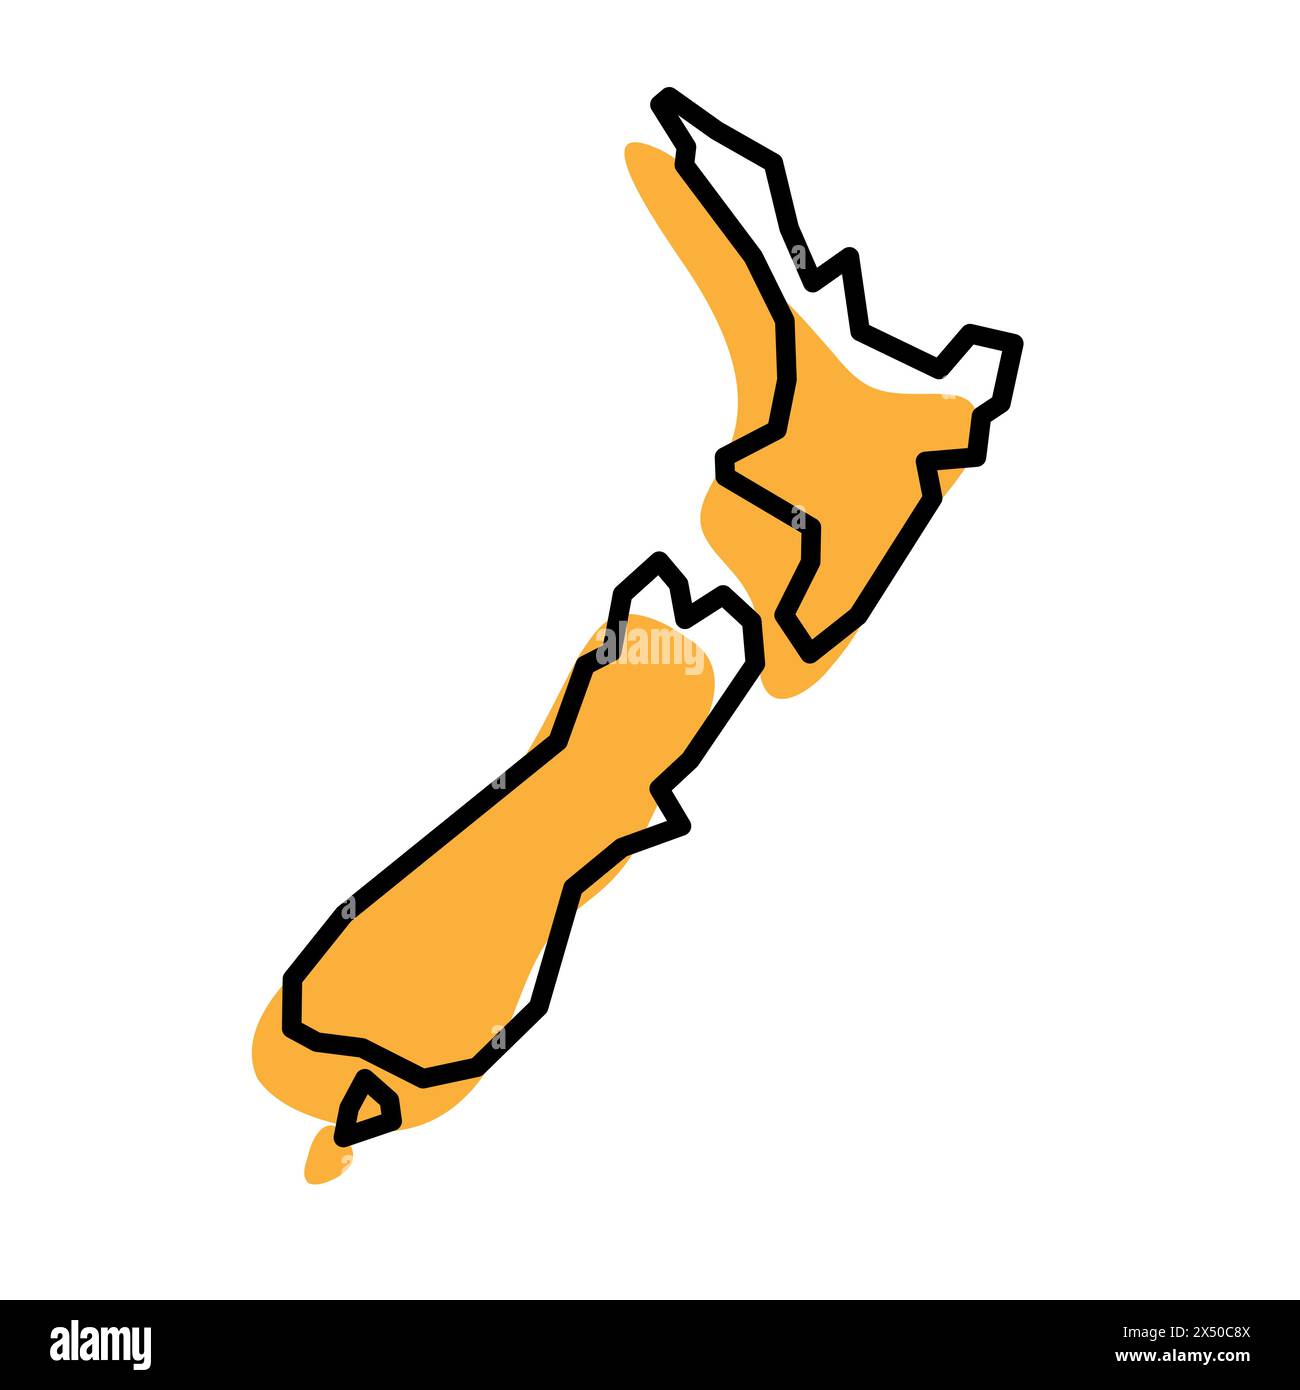 Vereinfachte Karte für das Land Neuseelands. Orangefarbene Silhouette mit dicker schwarzer, scharfer Kontur, isoliert auf weißem Hintergrund. Einfaches Vektorsymbol Stock Vektor